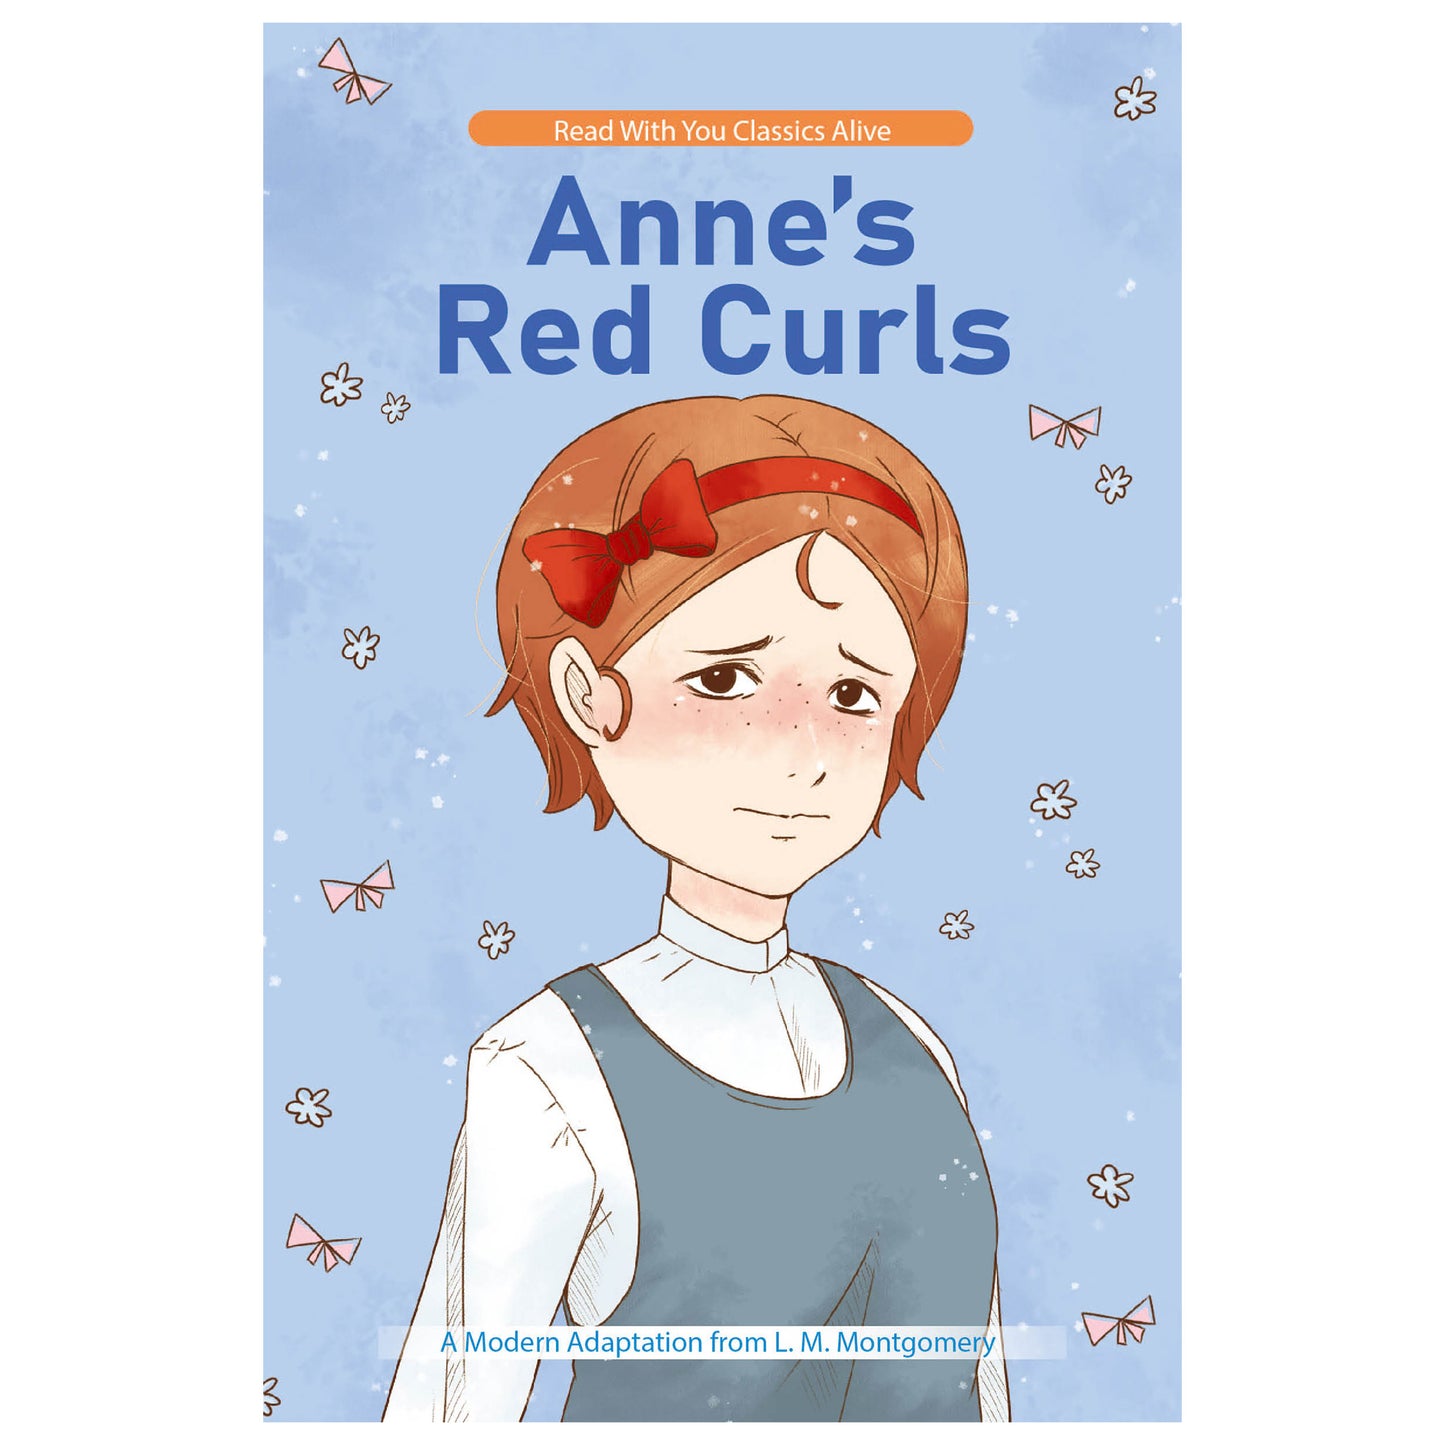 Anne's Red Curls